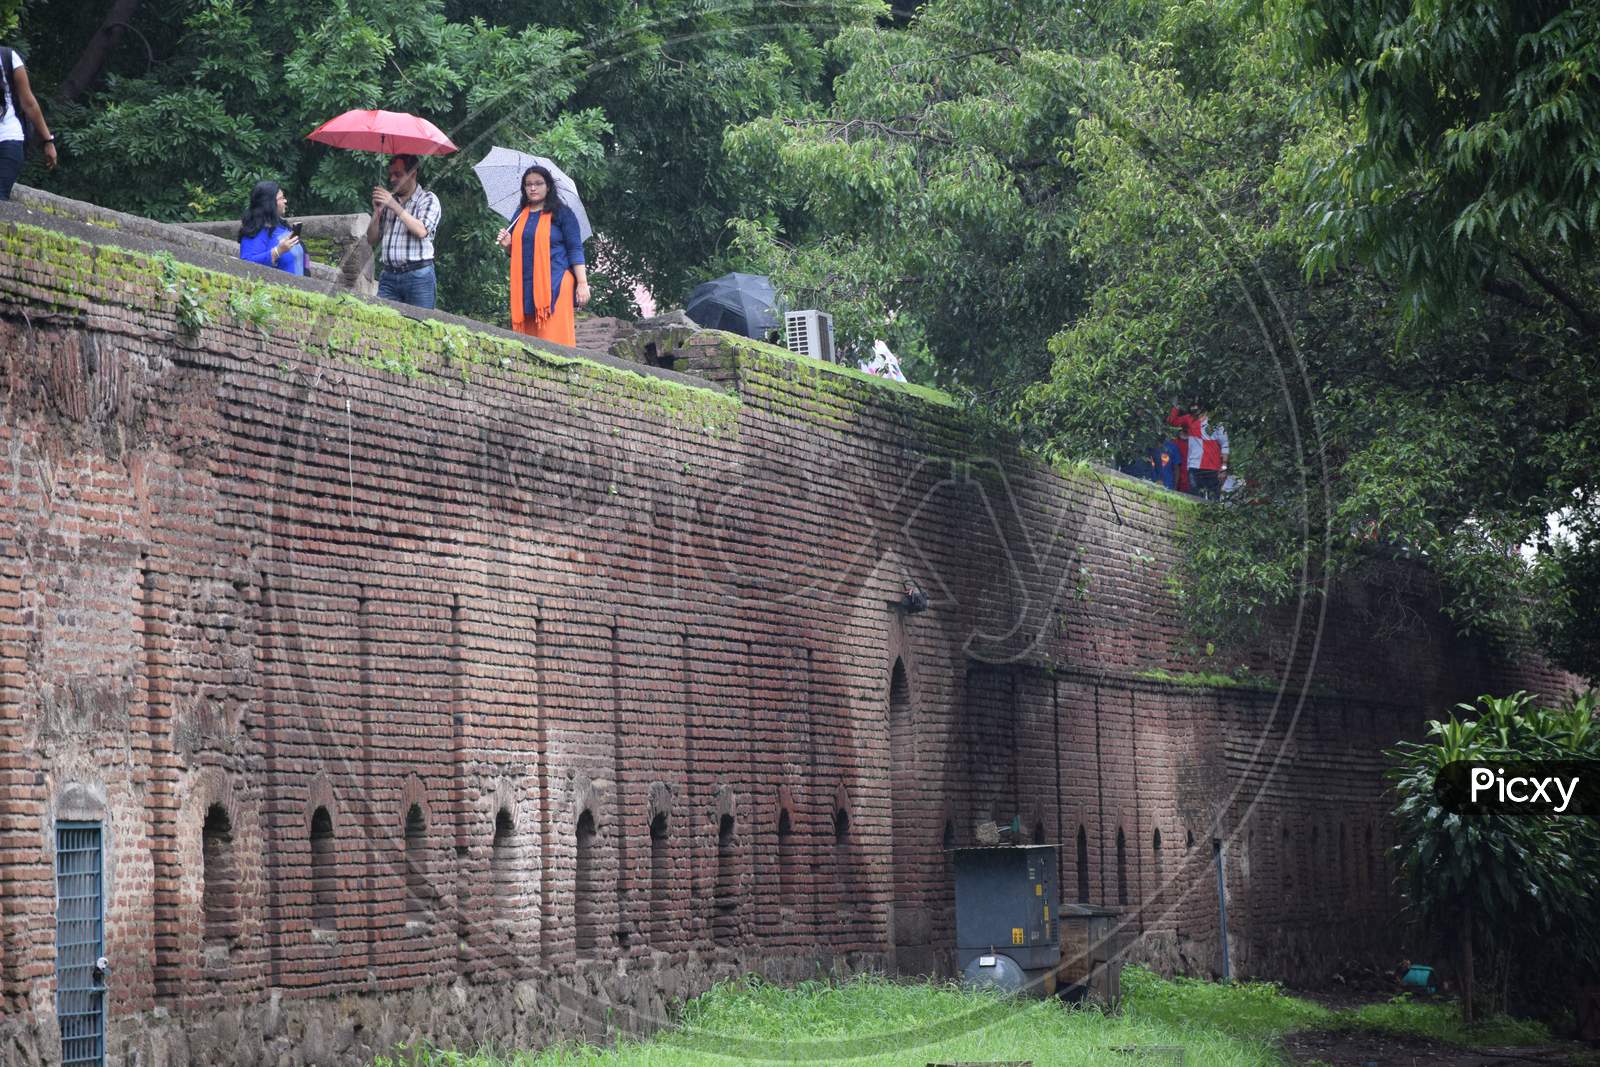 A wall of shaniwarwada